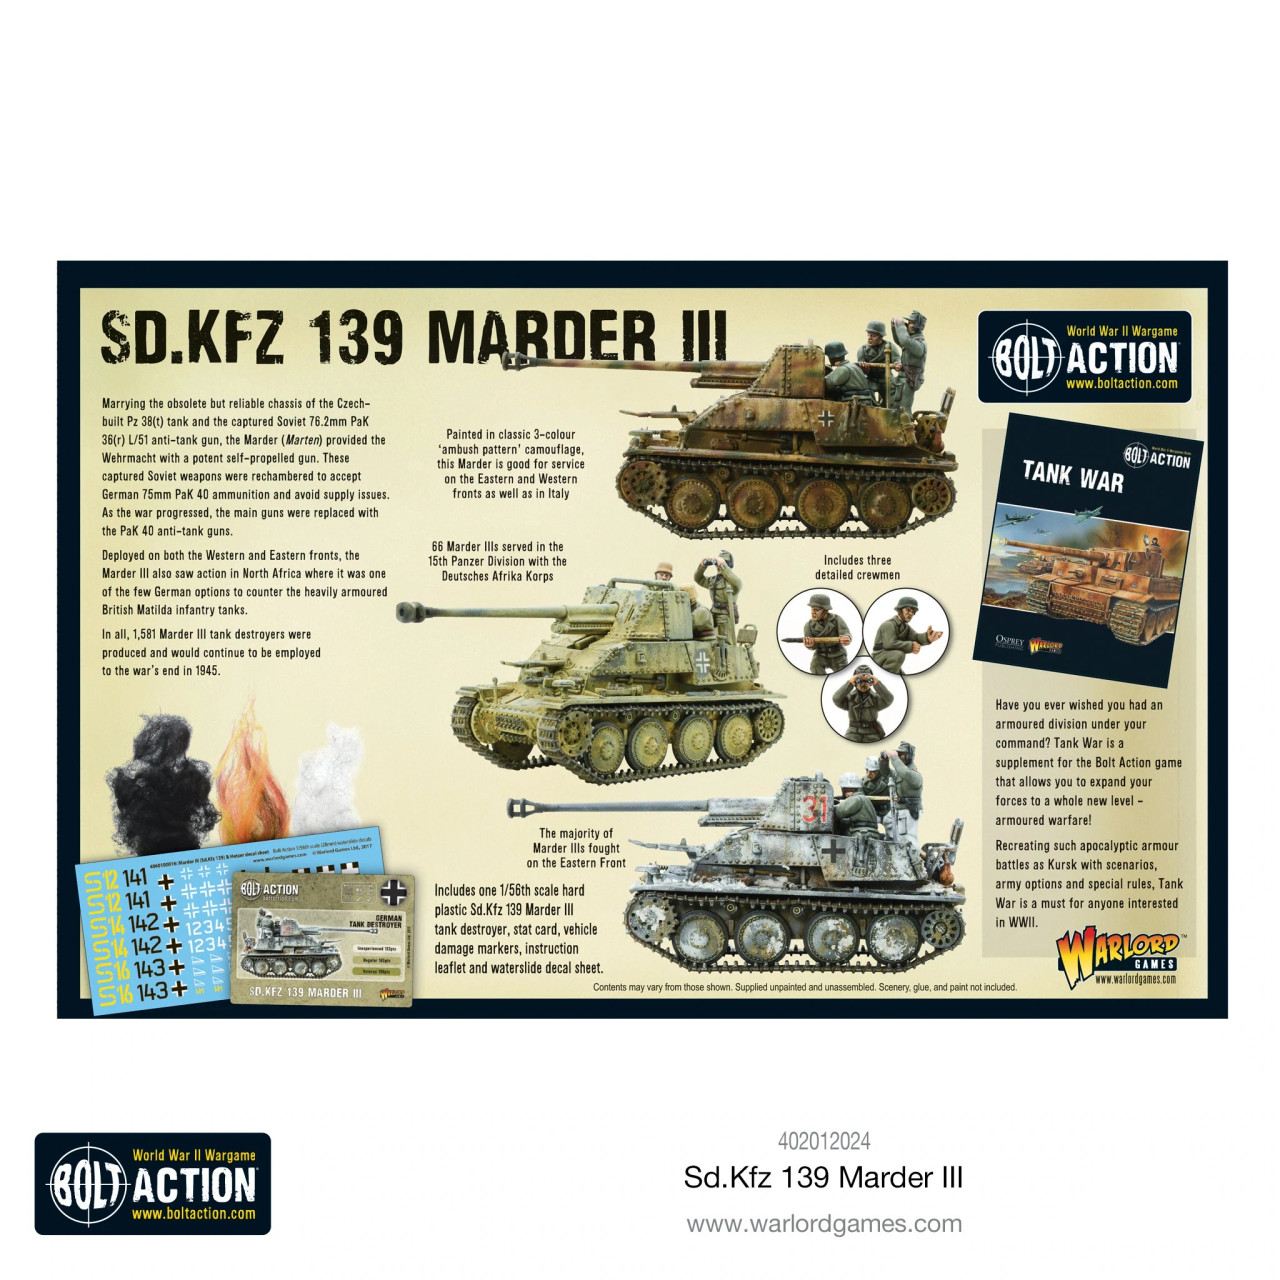 Sd.kfz 139 Marder III - 402012024